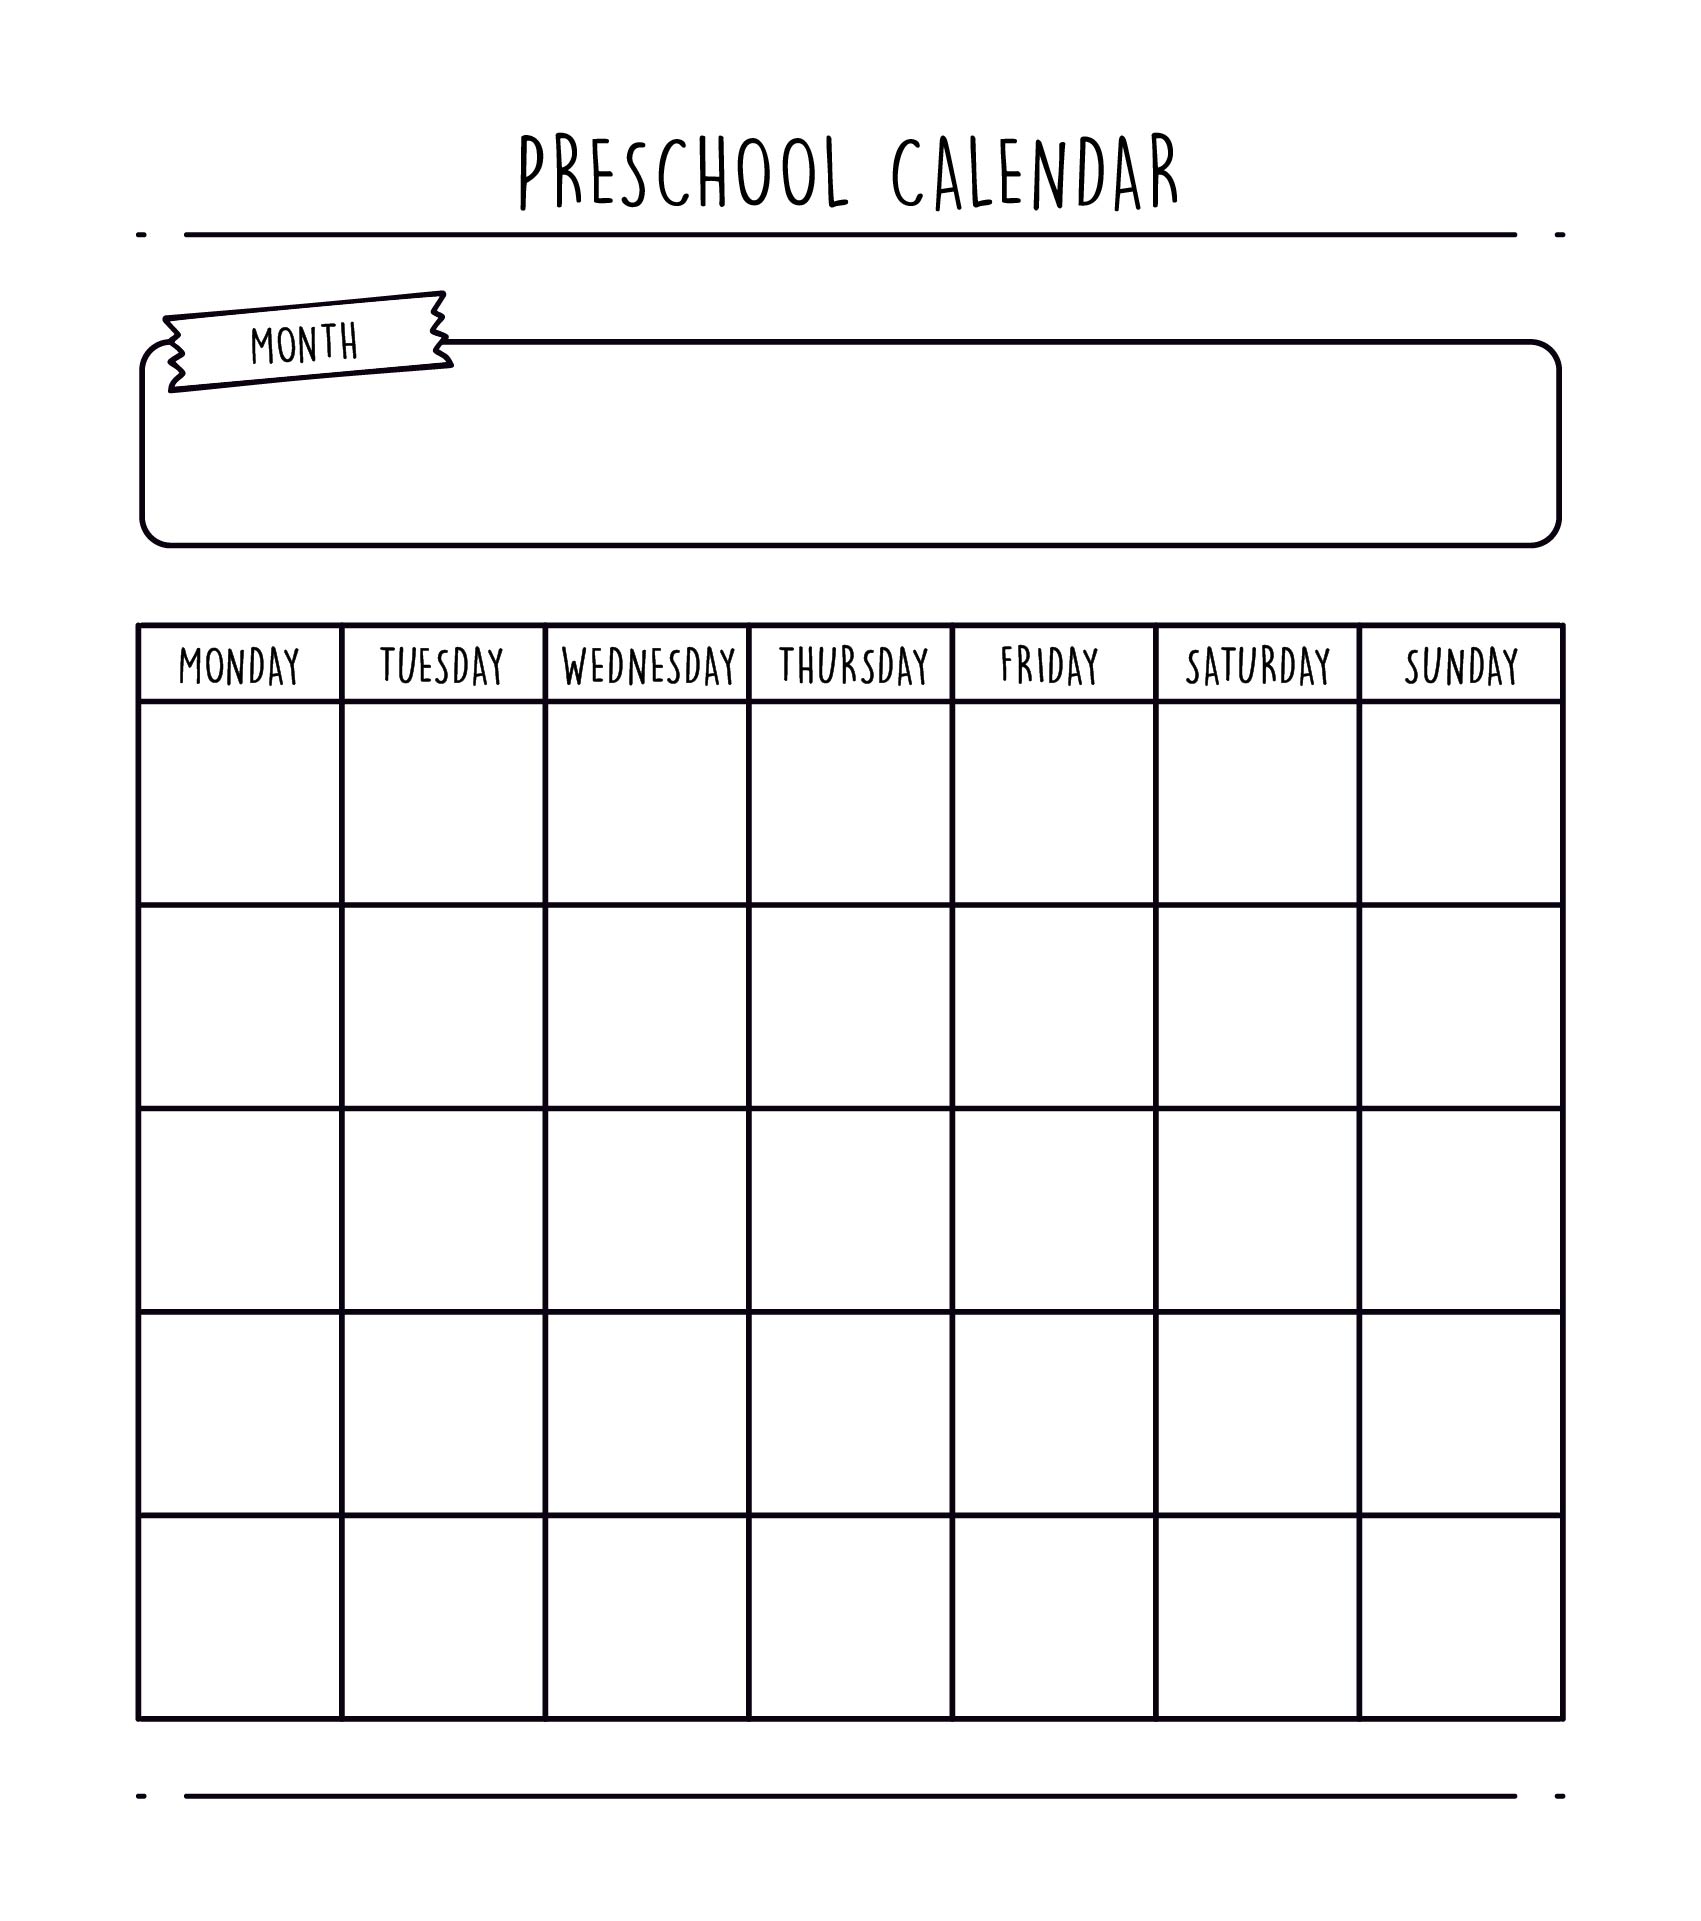 5-best-images-of-free-printable-preschool-calendar-template-preschool-printable-calendar-vrogue